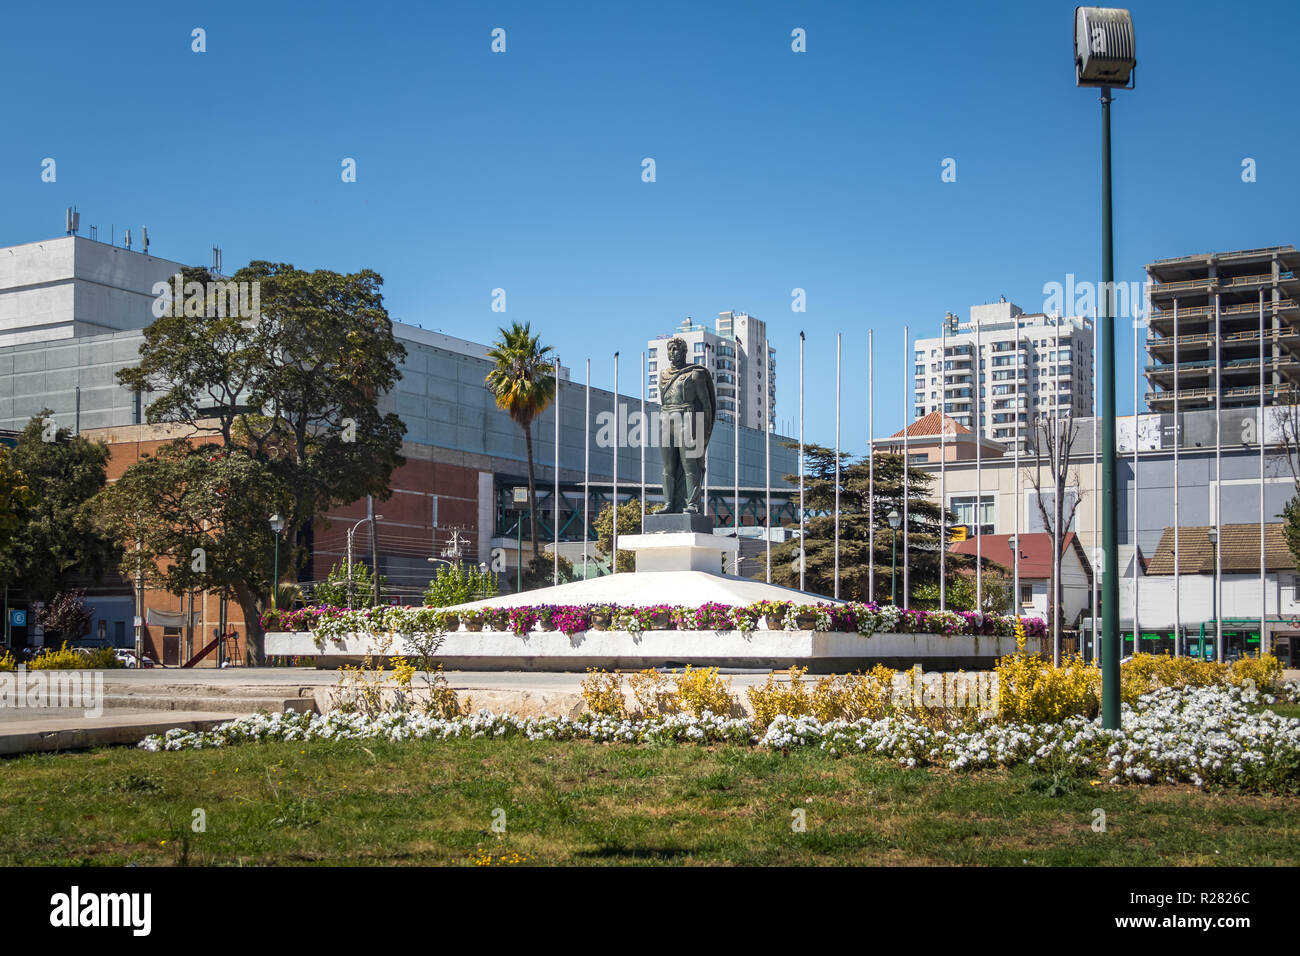 Plaza Ohiggins Square - Vina del Mar, Chile Stock Photo